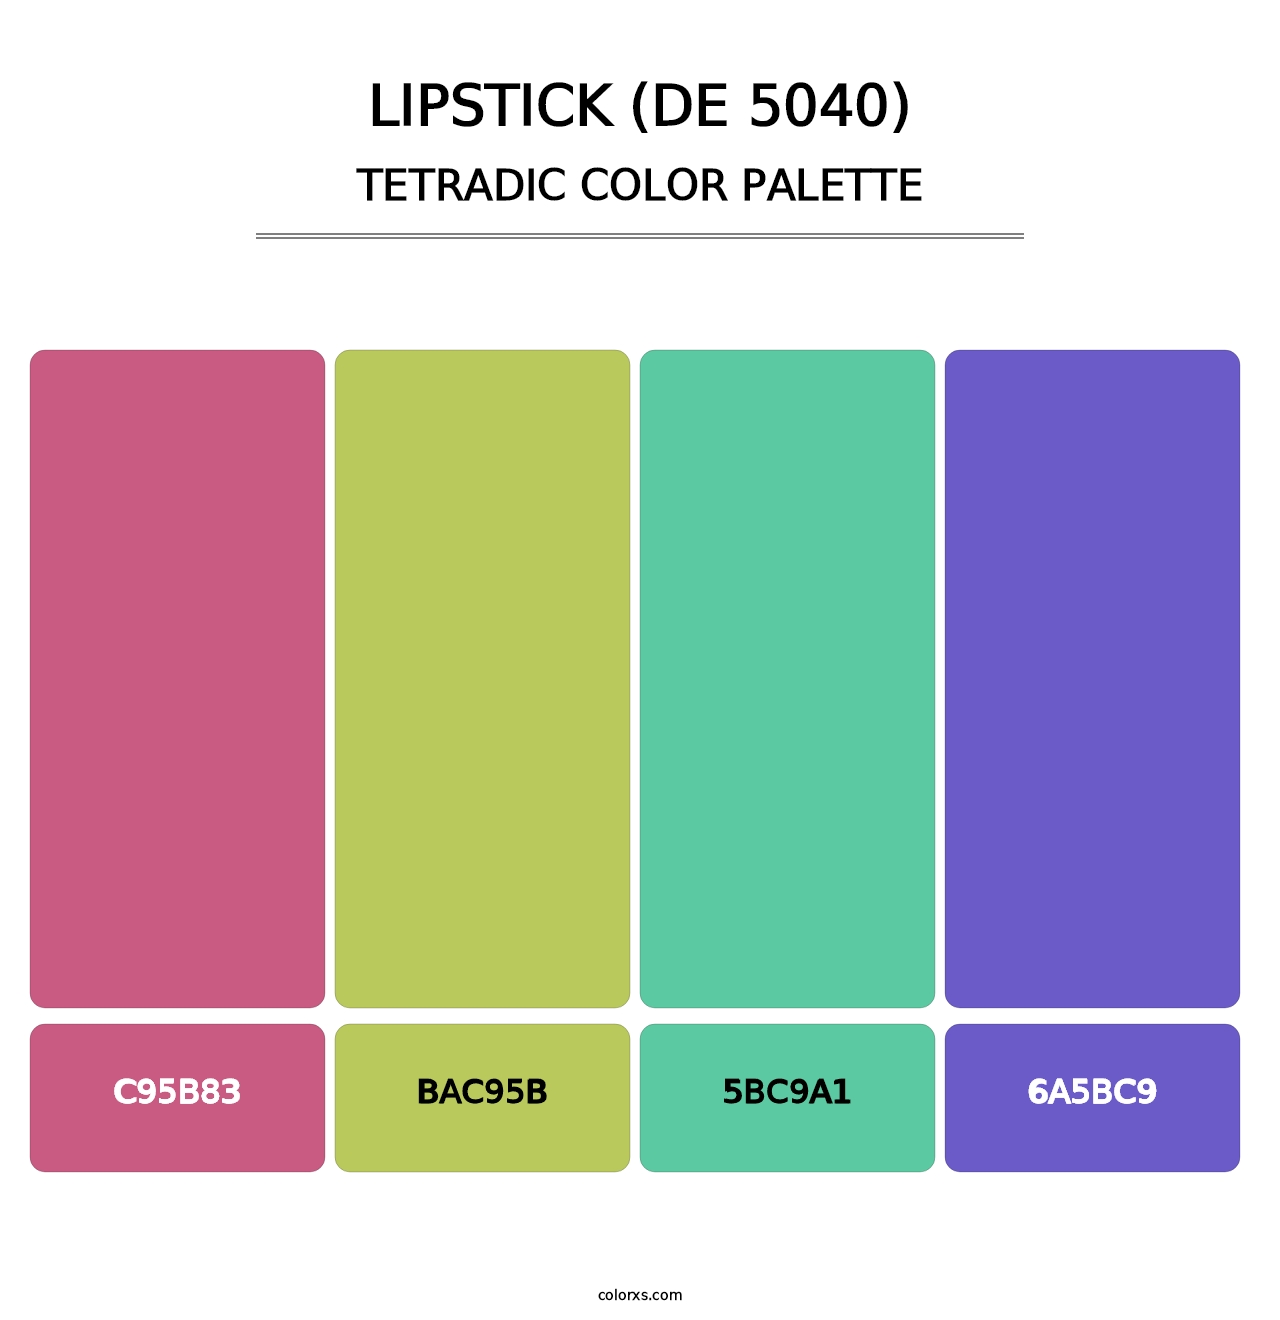 Lipstick (DE 5040) - Tetradic Color Palette